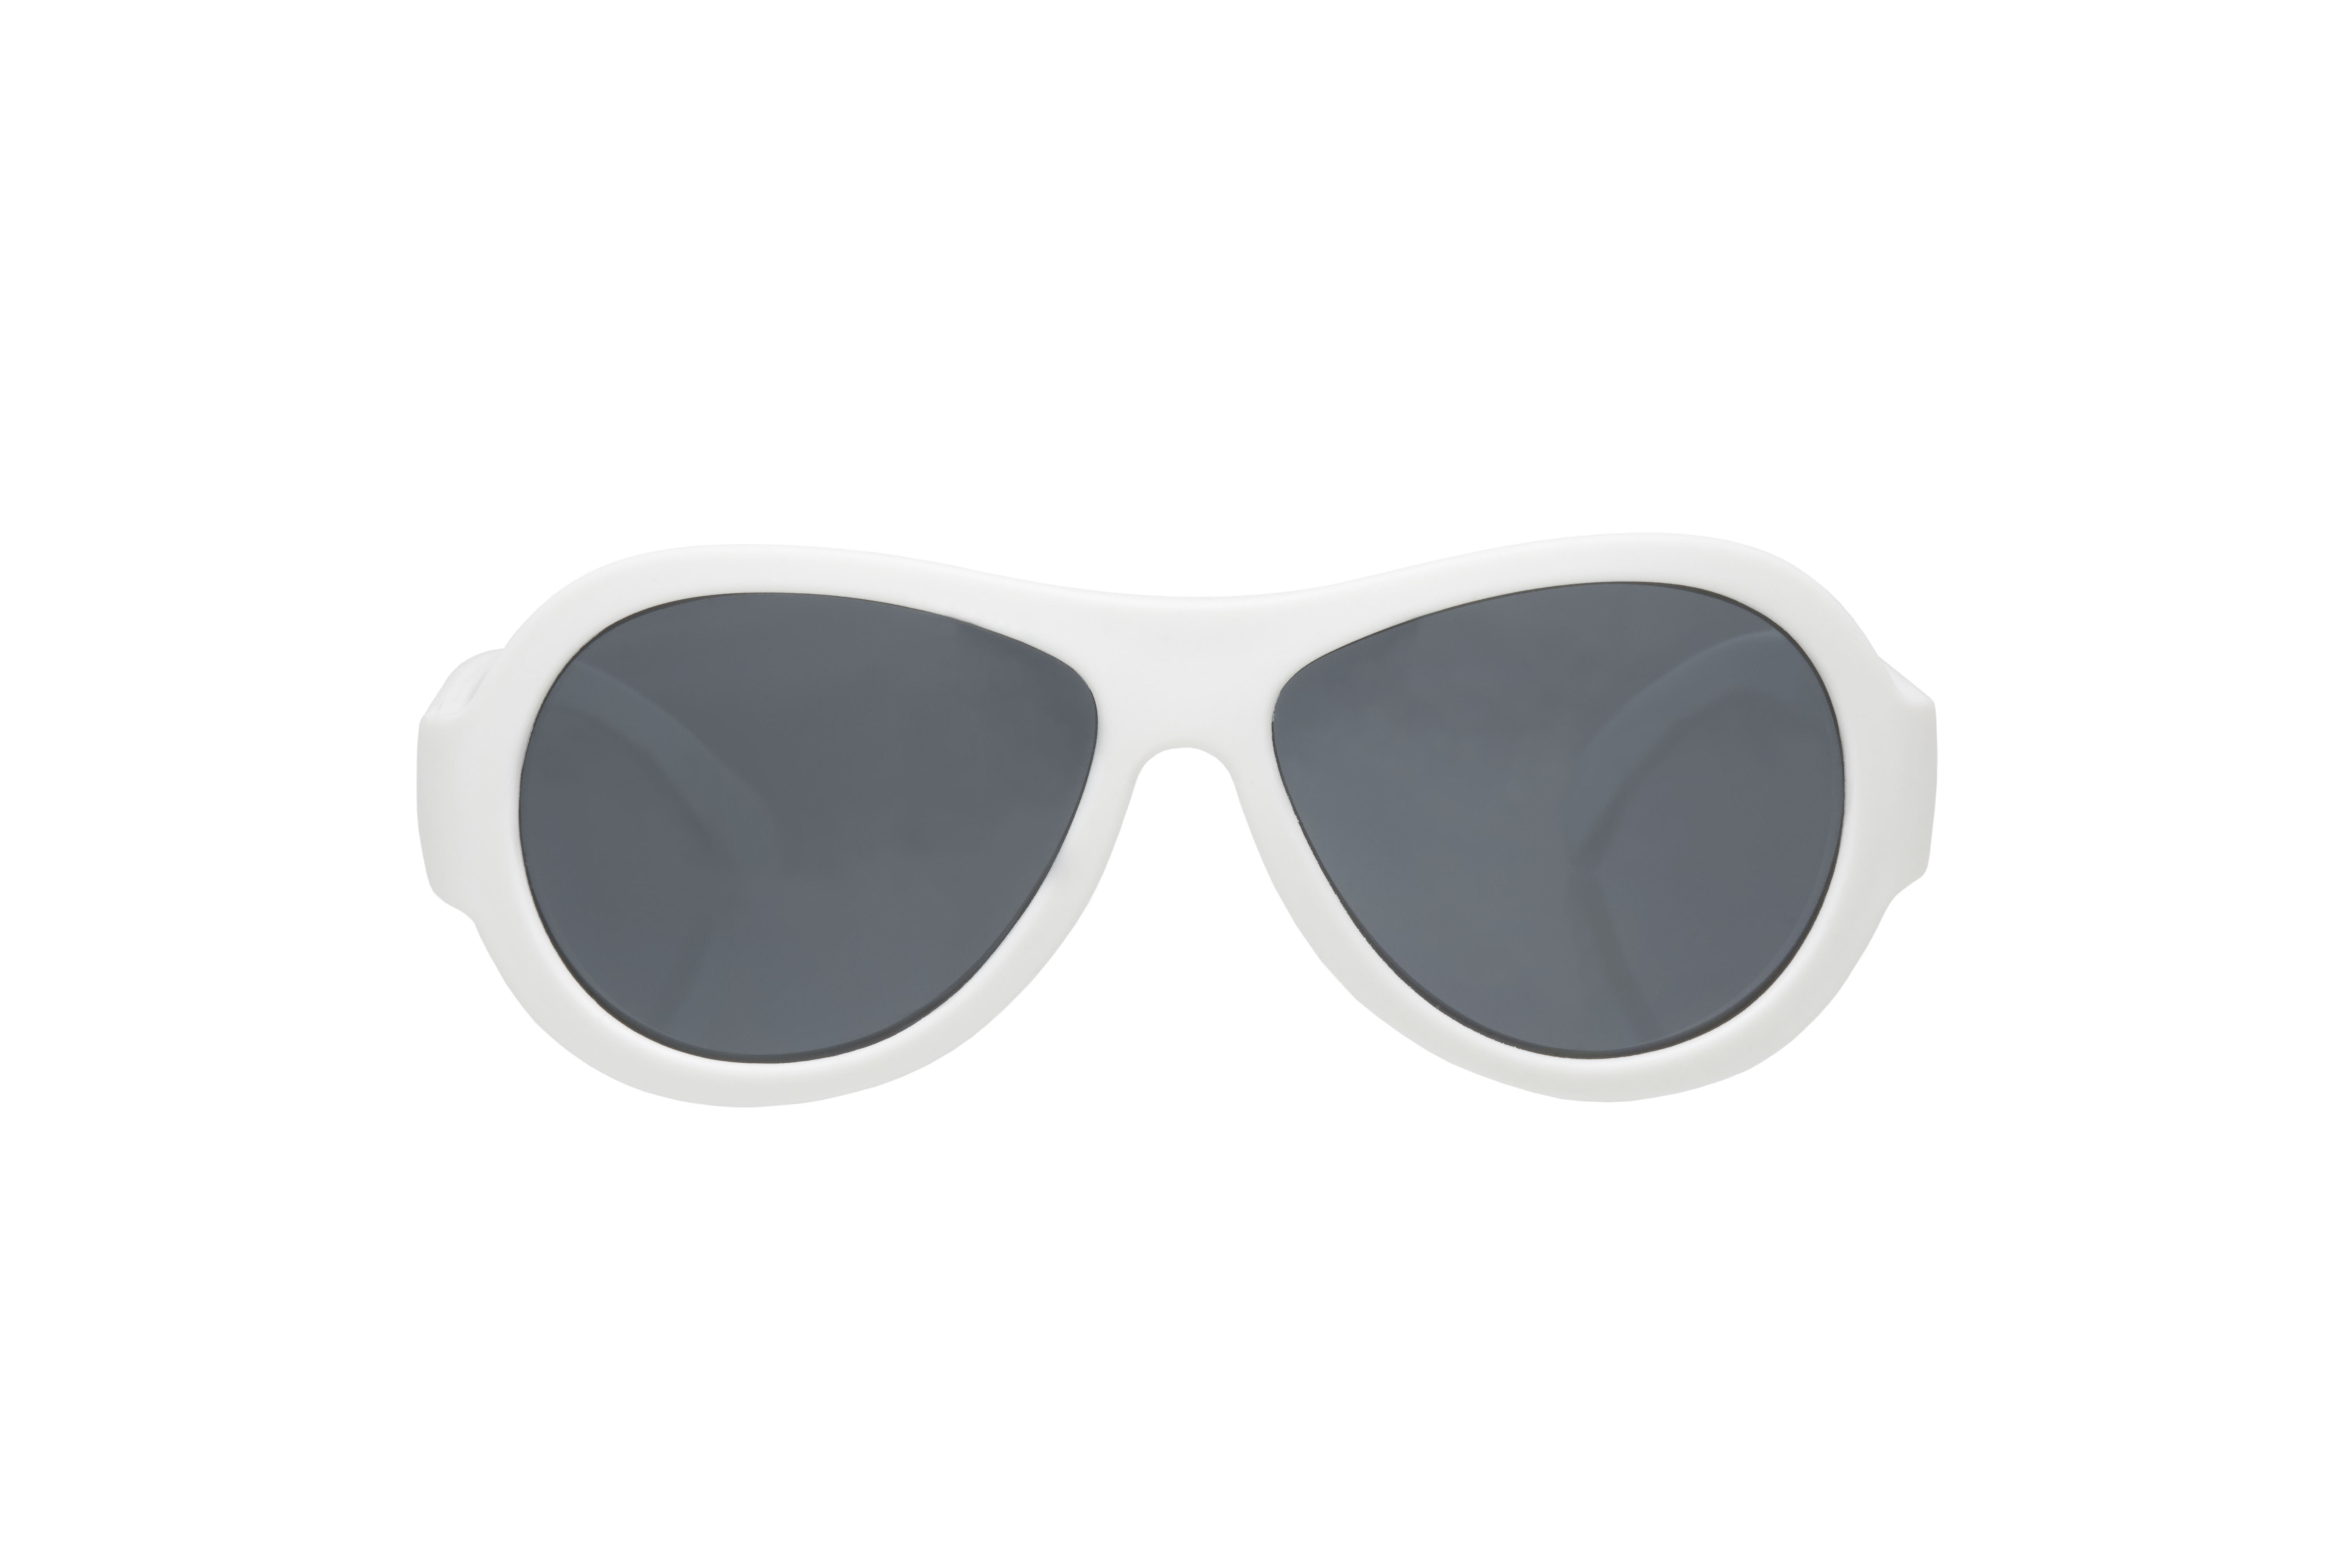 Babiators, okulary przeciwsłoneczne Classic 0-2 Zwariowany biały